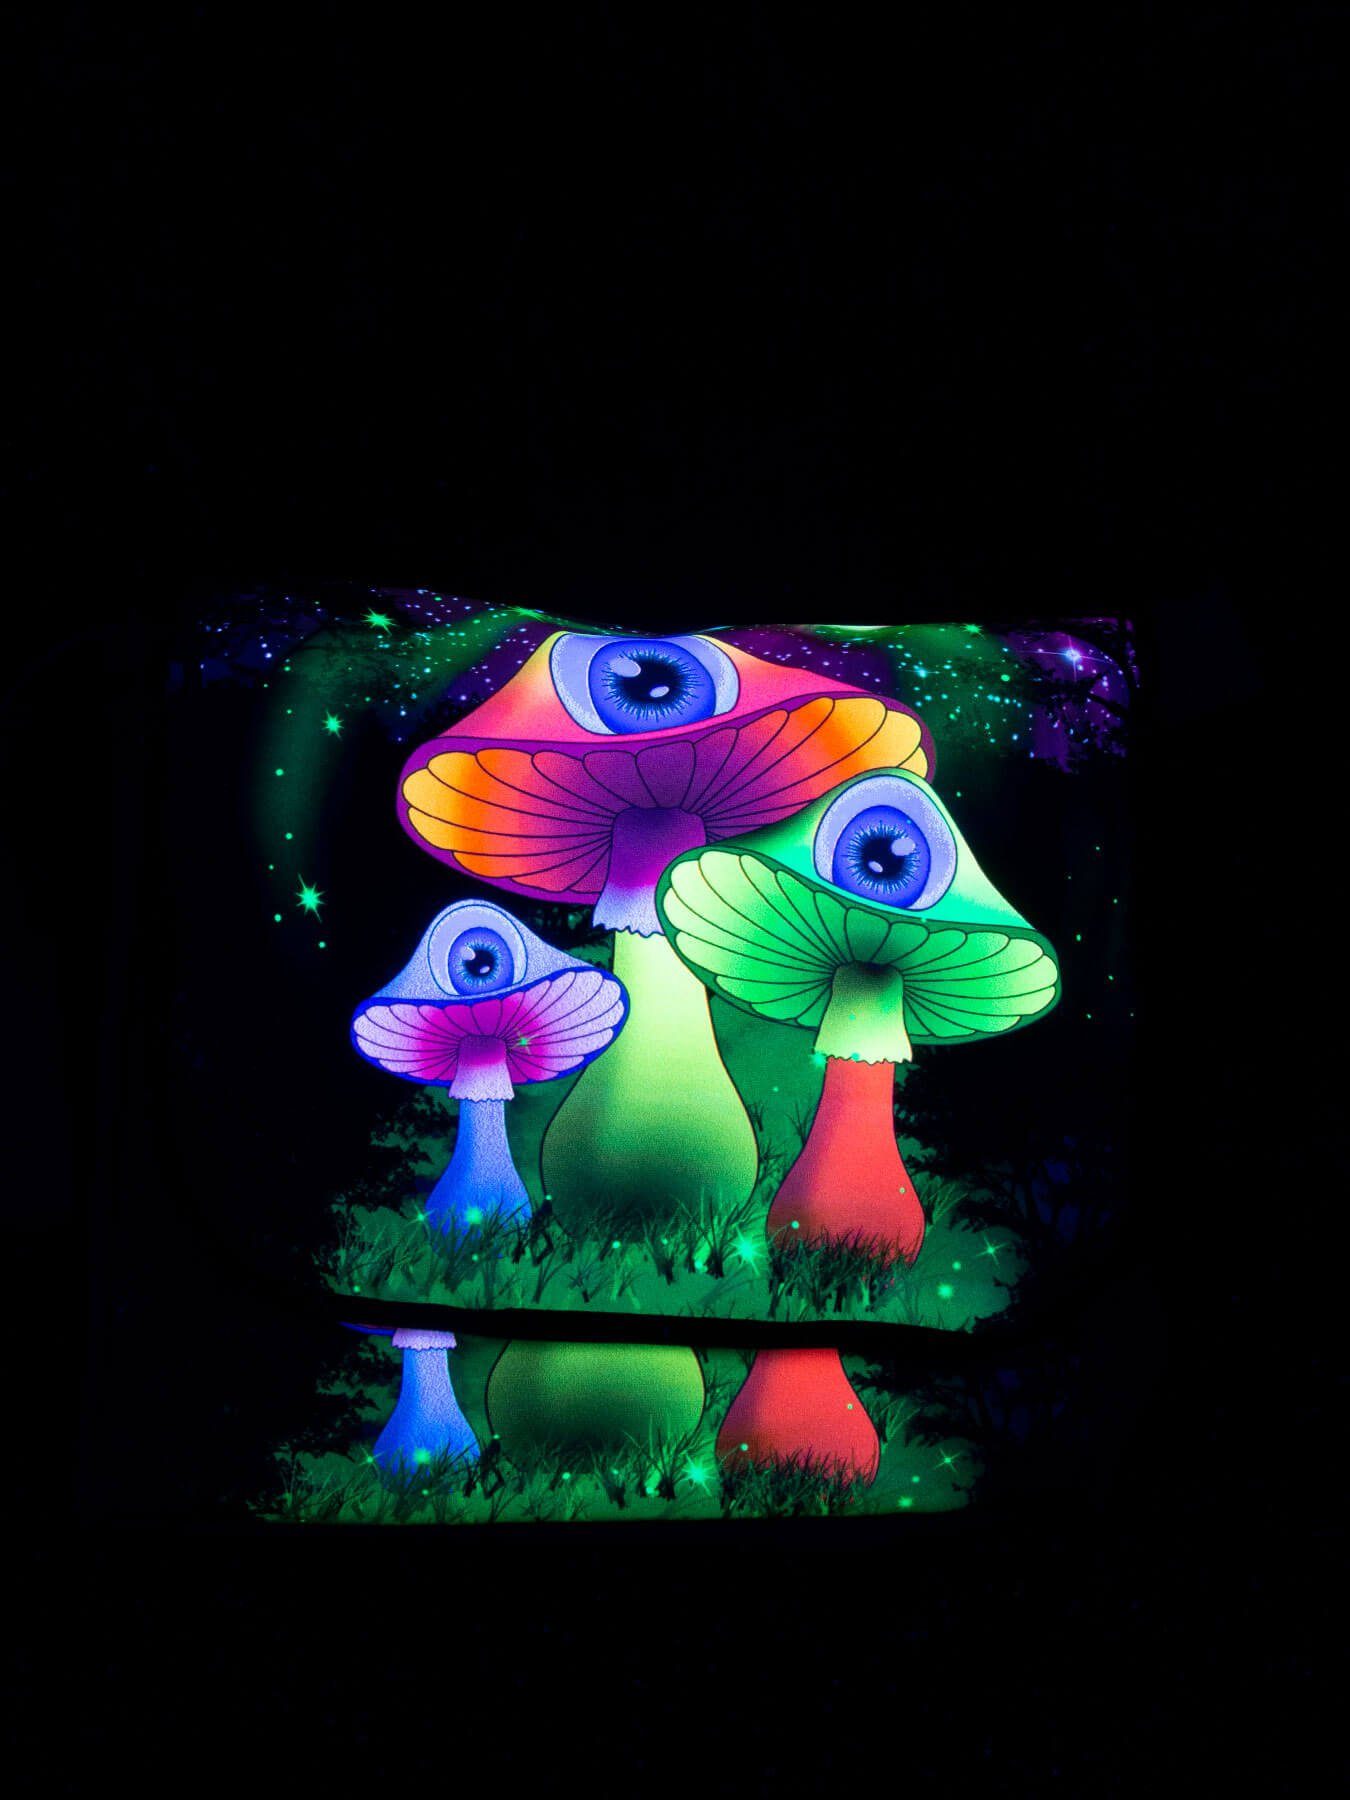 PSYWORK Tragetasche Schwarzlicht Umhängetasche Neon leuchtet UV-aktiv, unter Schwarzlicht Mushrooms", "Redmoon